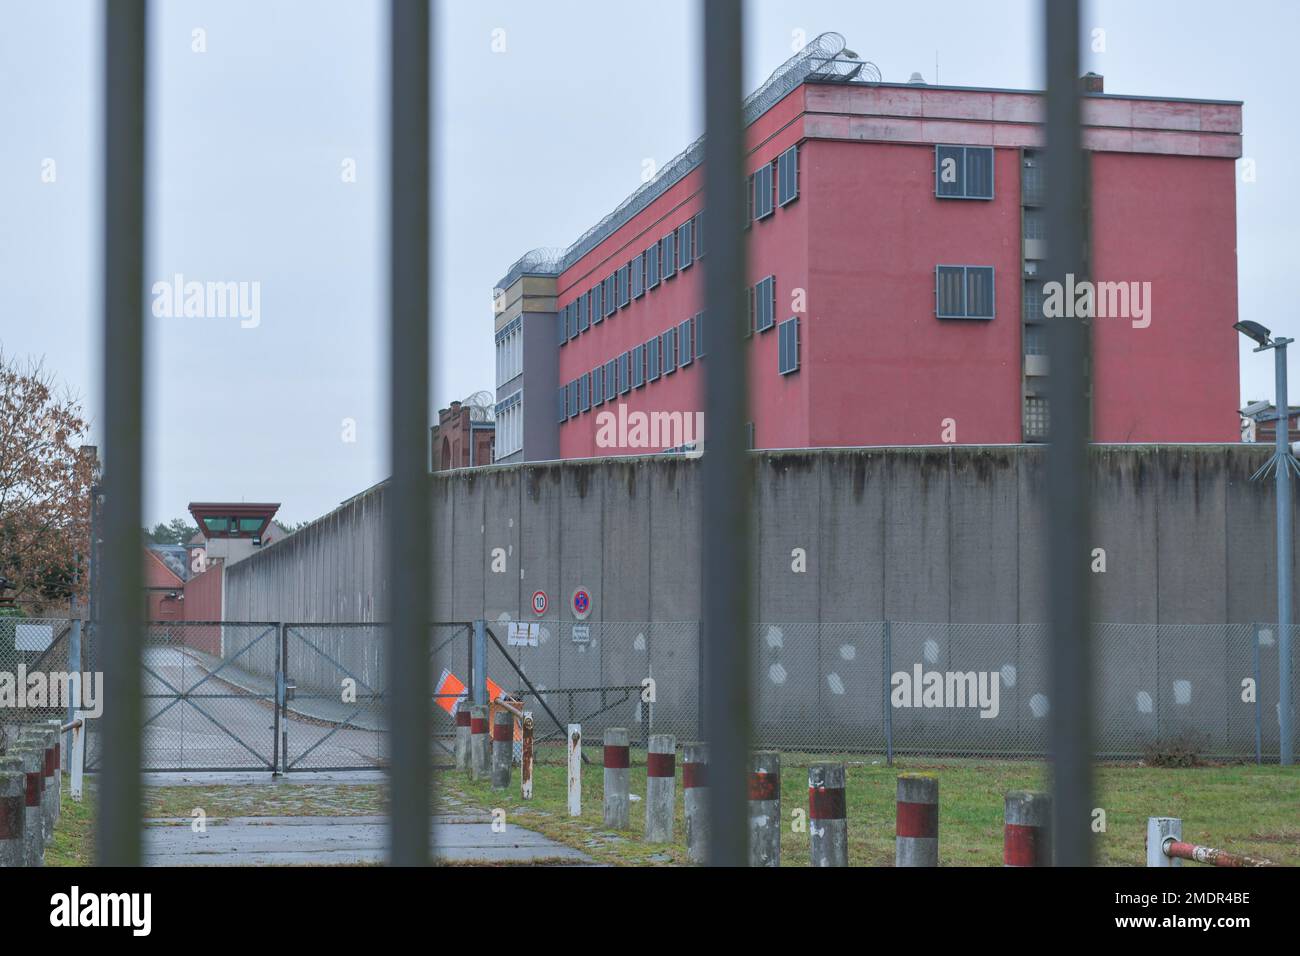 Tegel Prison, Seidelstrasse, Reinickendorf, Berlin, Germany Stock Photo